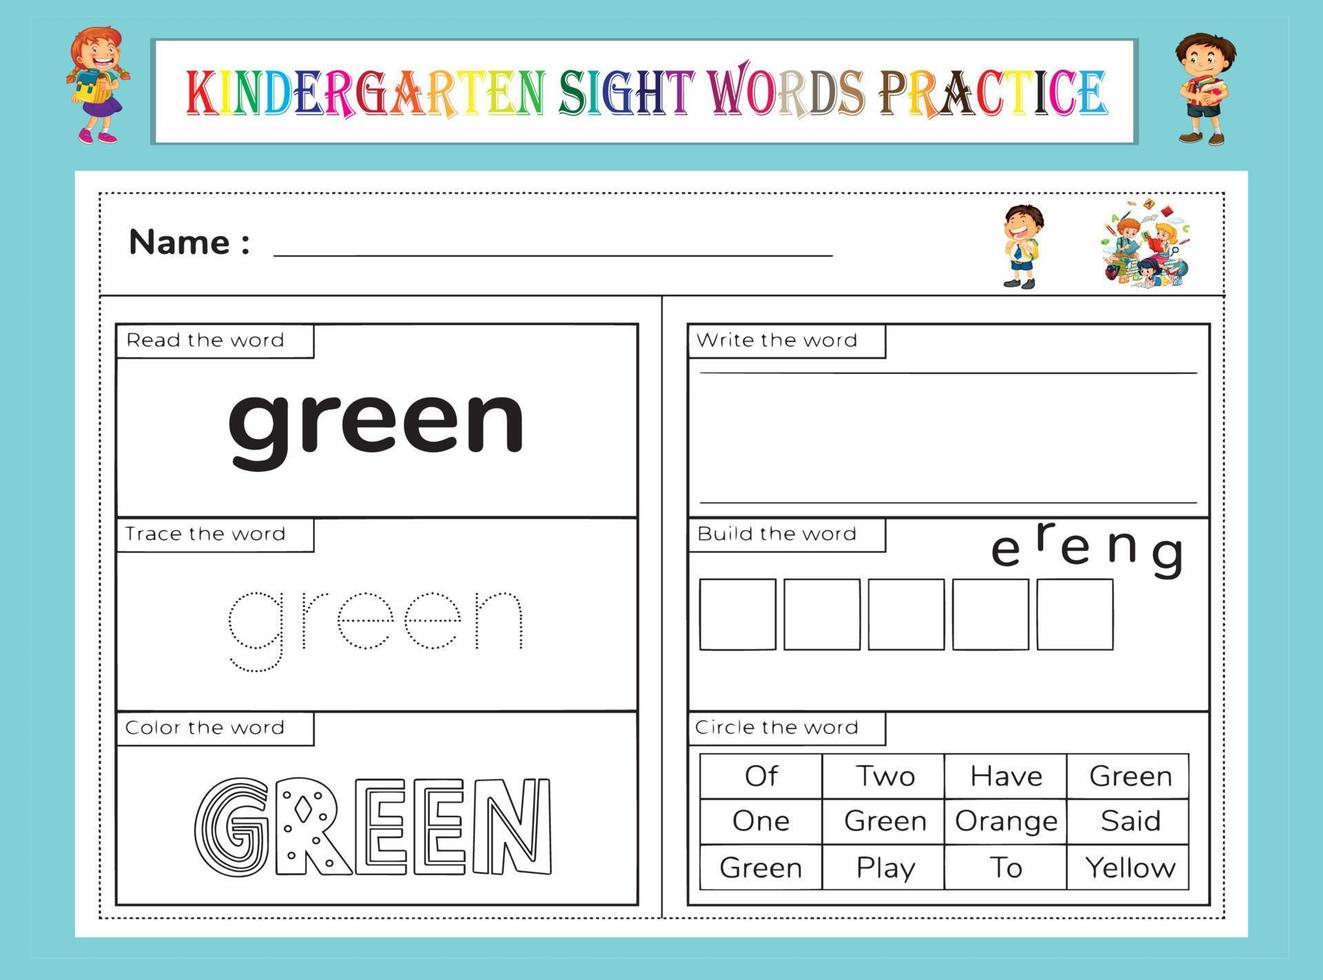 Kindergarten Sight Words Practice Worksheet vector